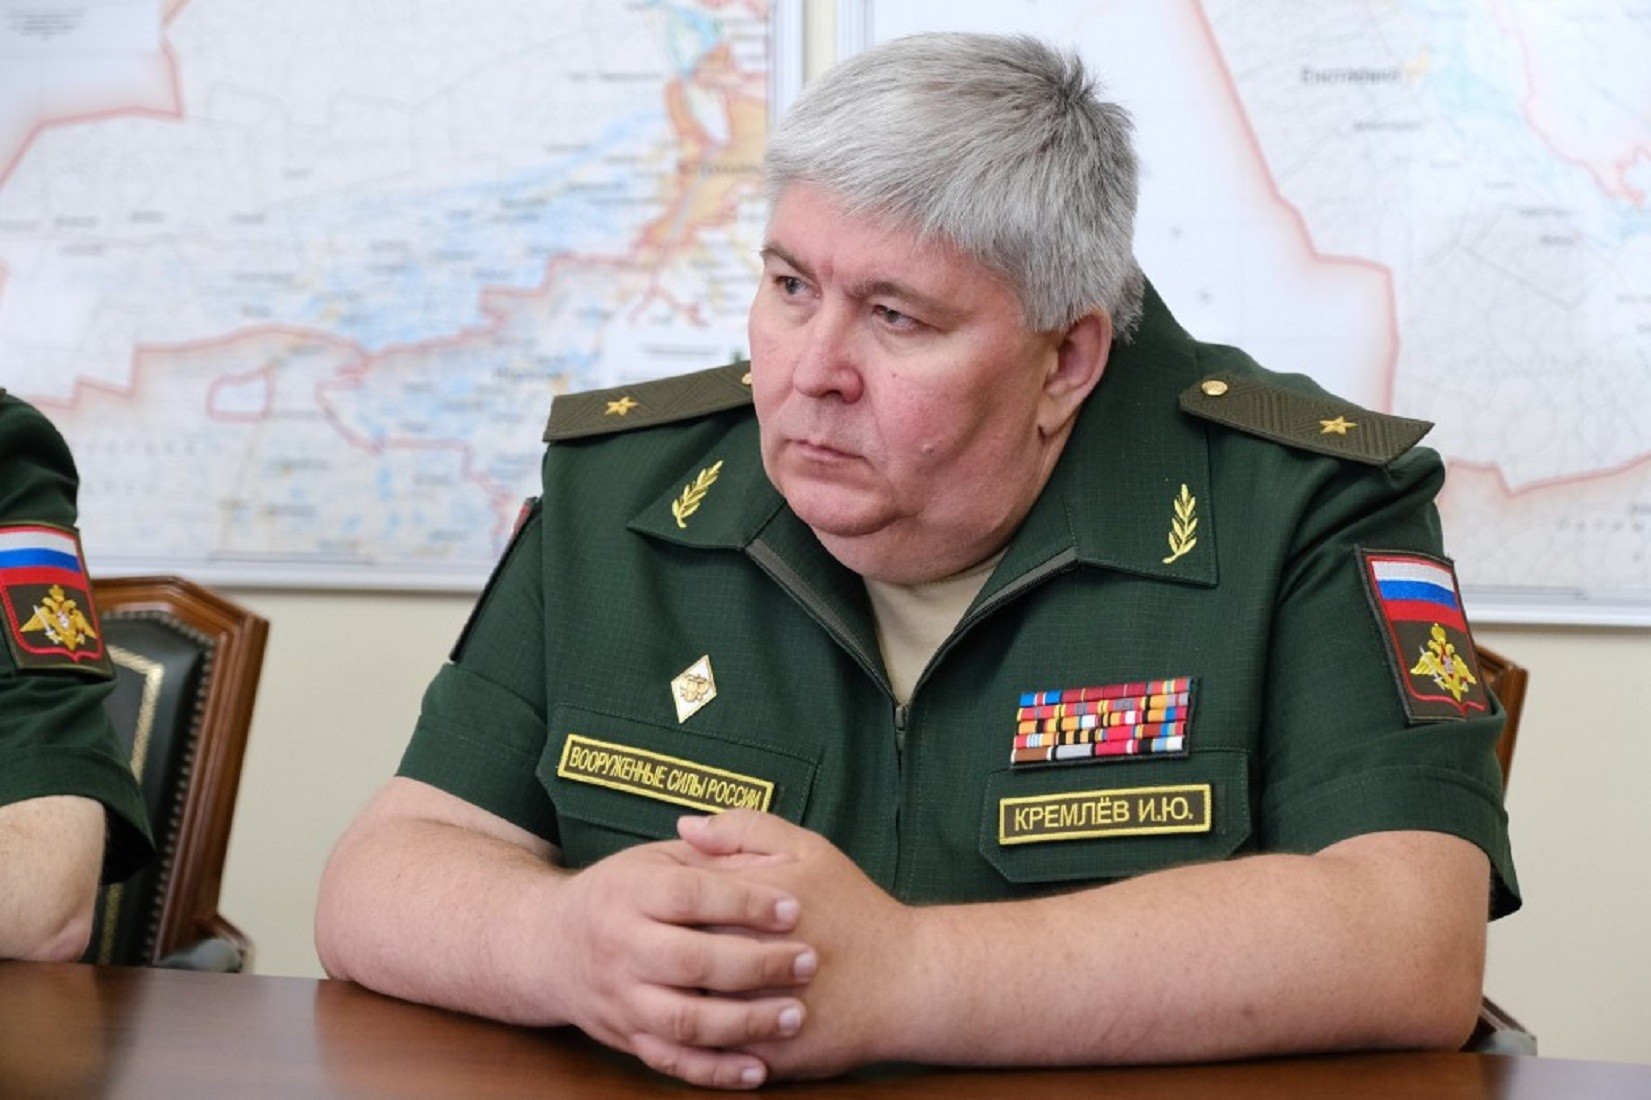 Генерал майор Кремлев Игорь Юрьевич